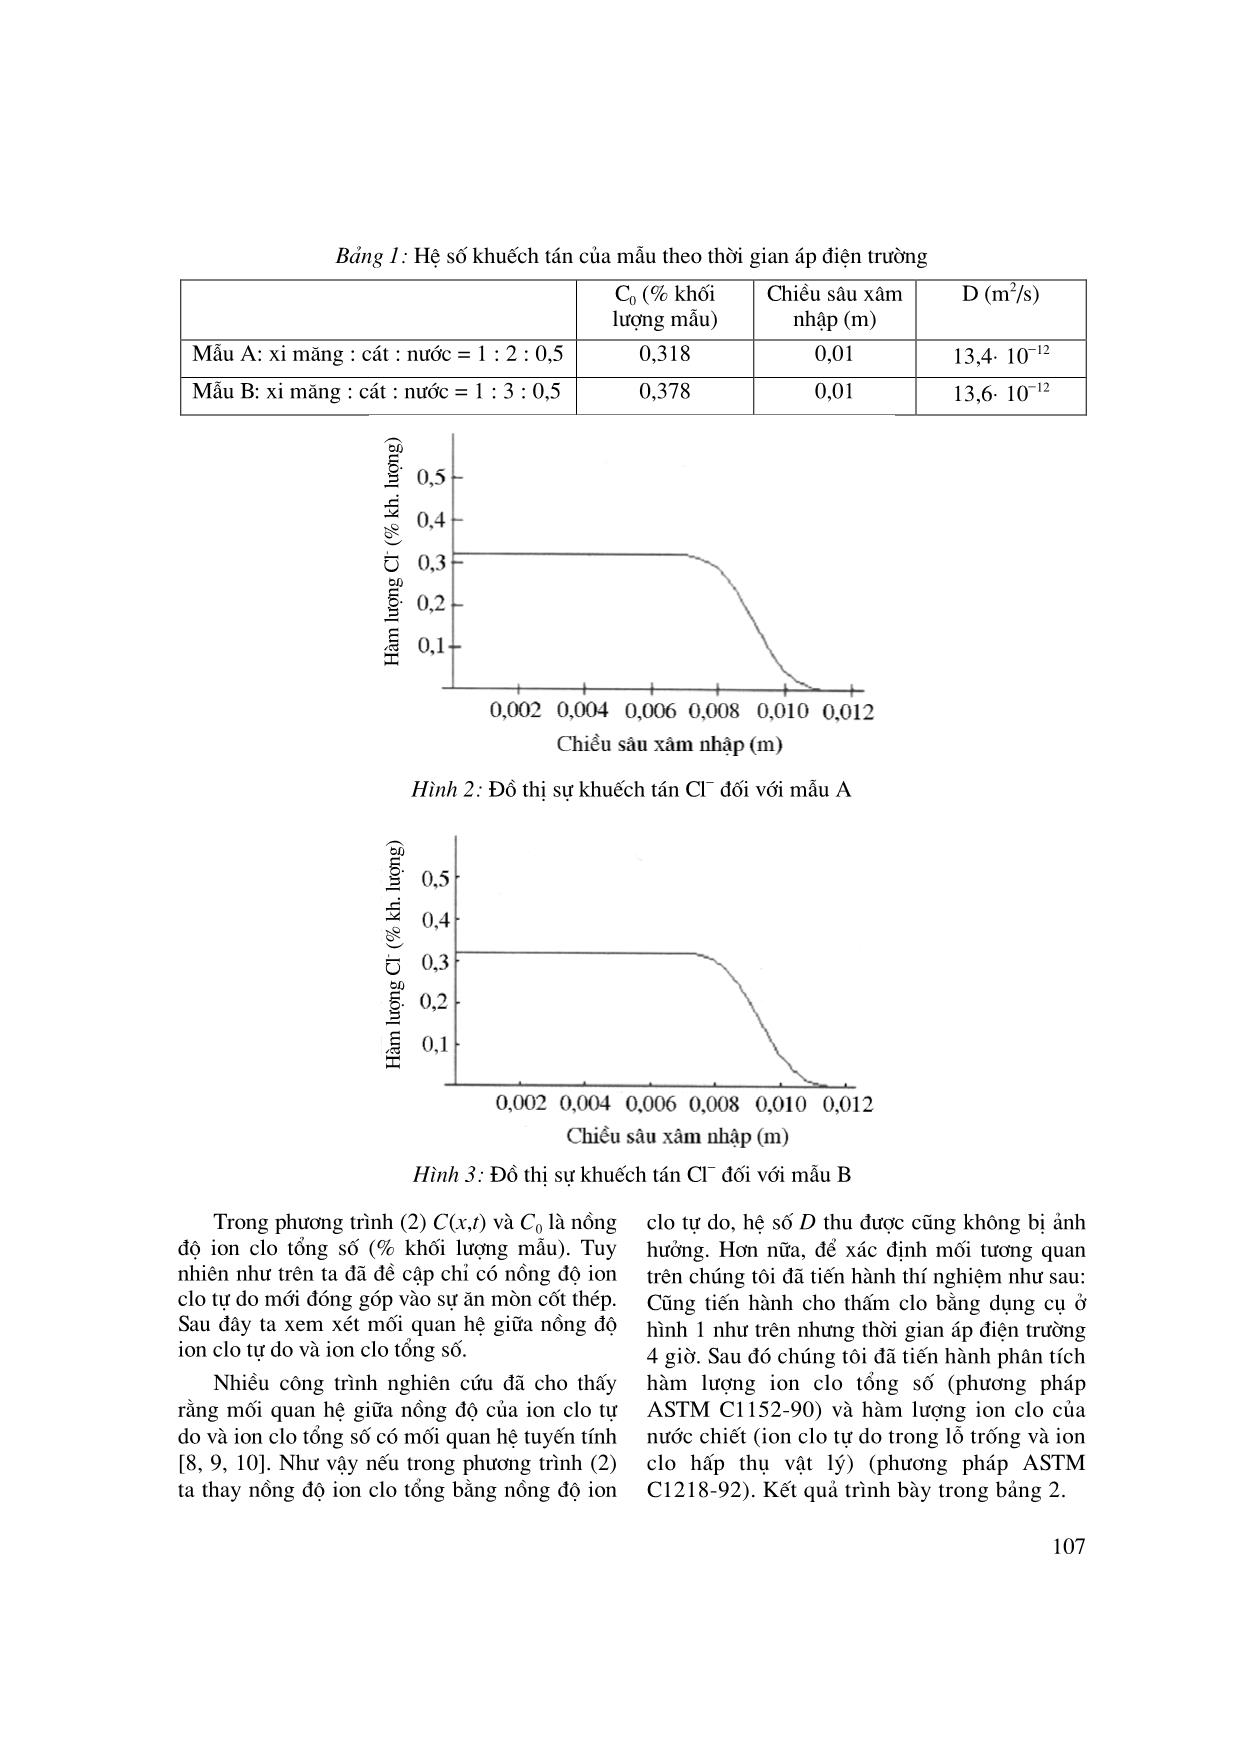 Hệ số khuếch tán Cl và các dạng nồng độ của Cl trong bê tông trang 3